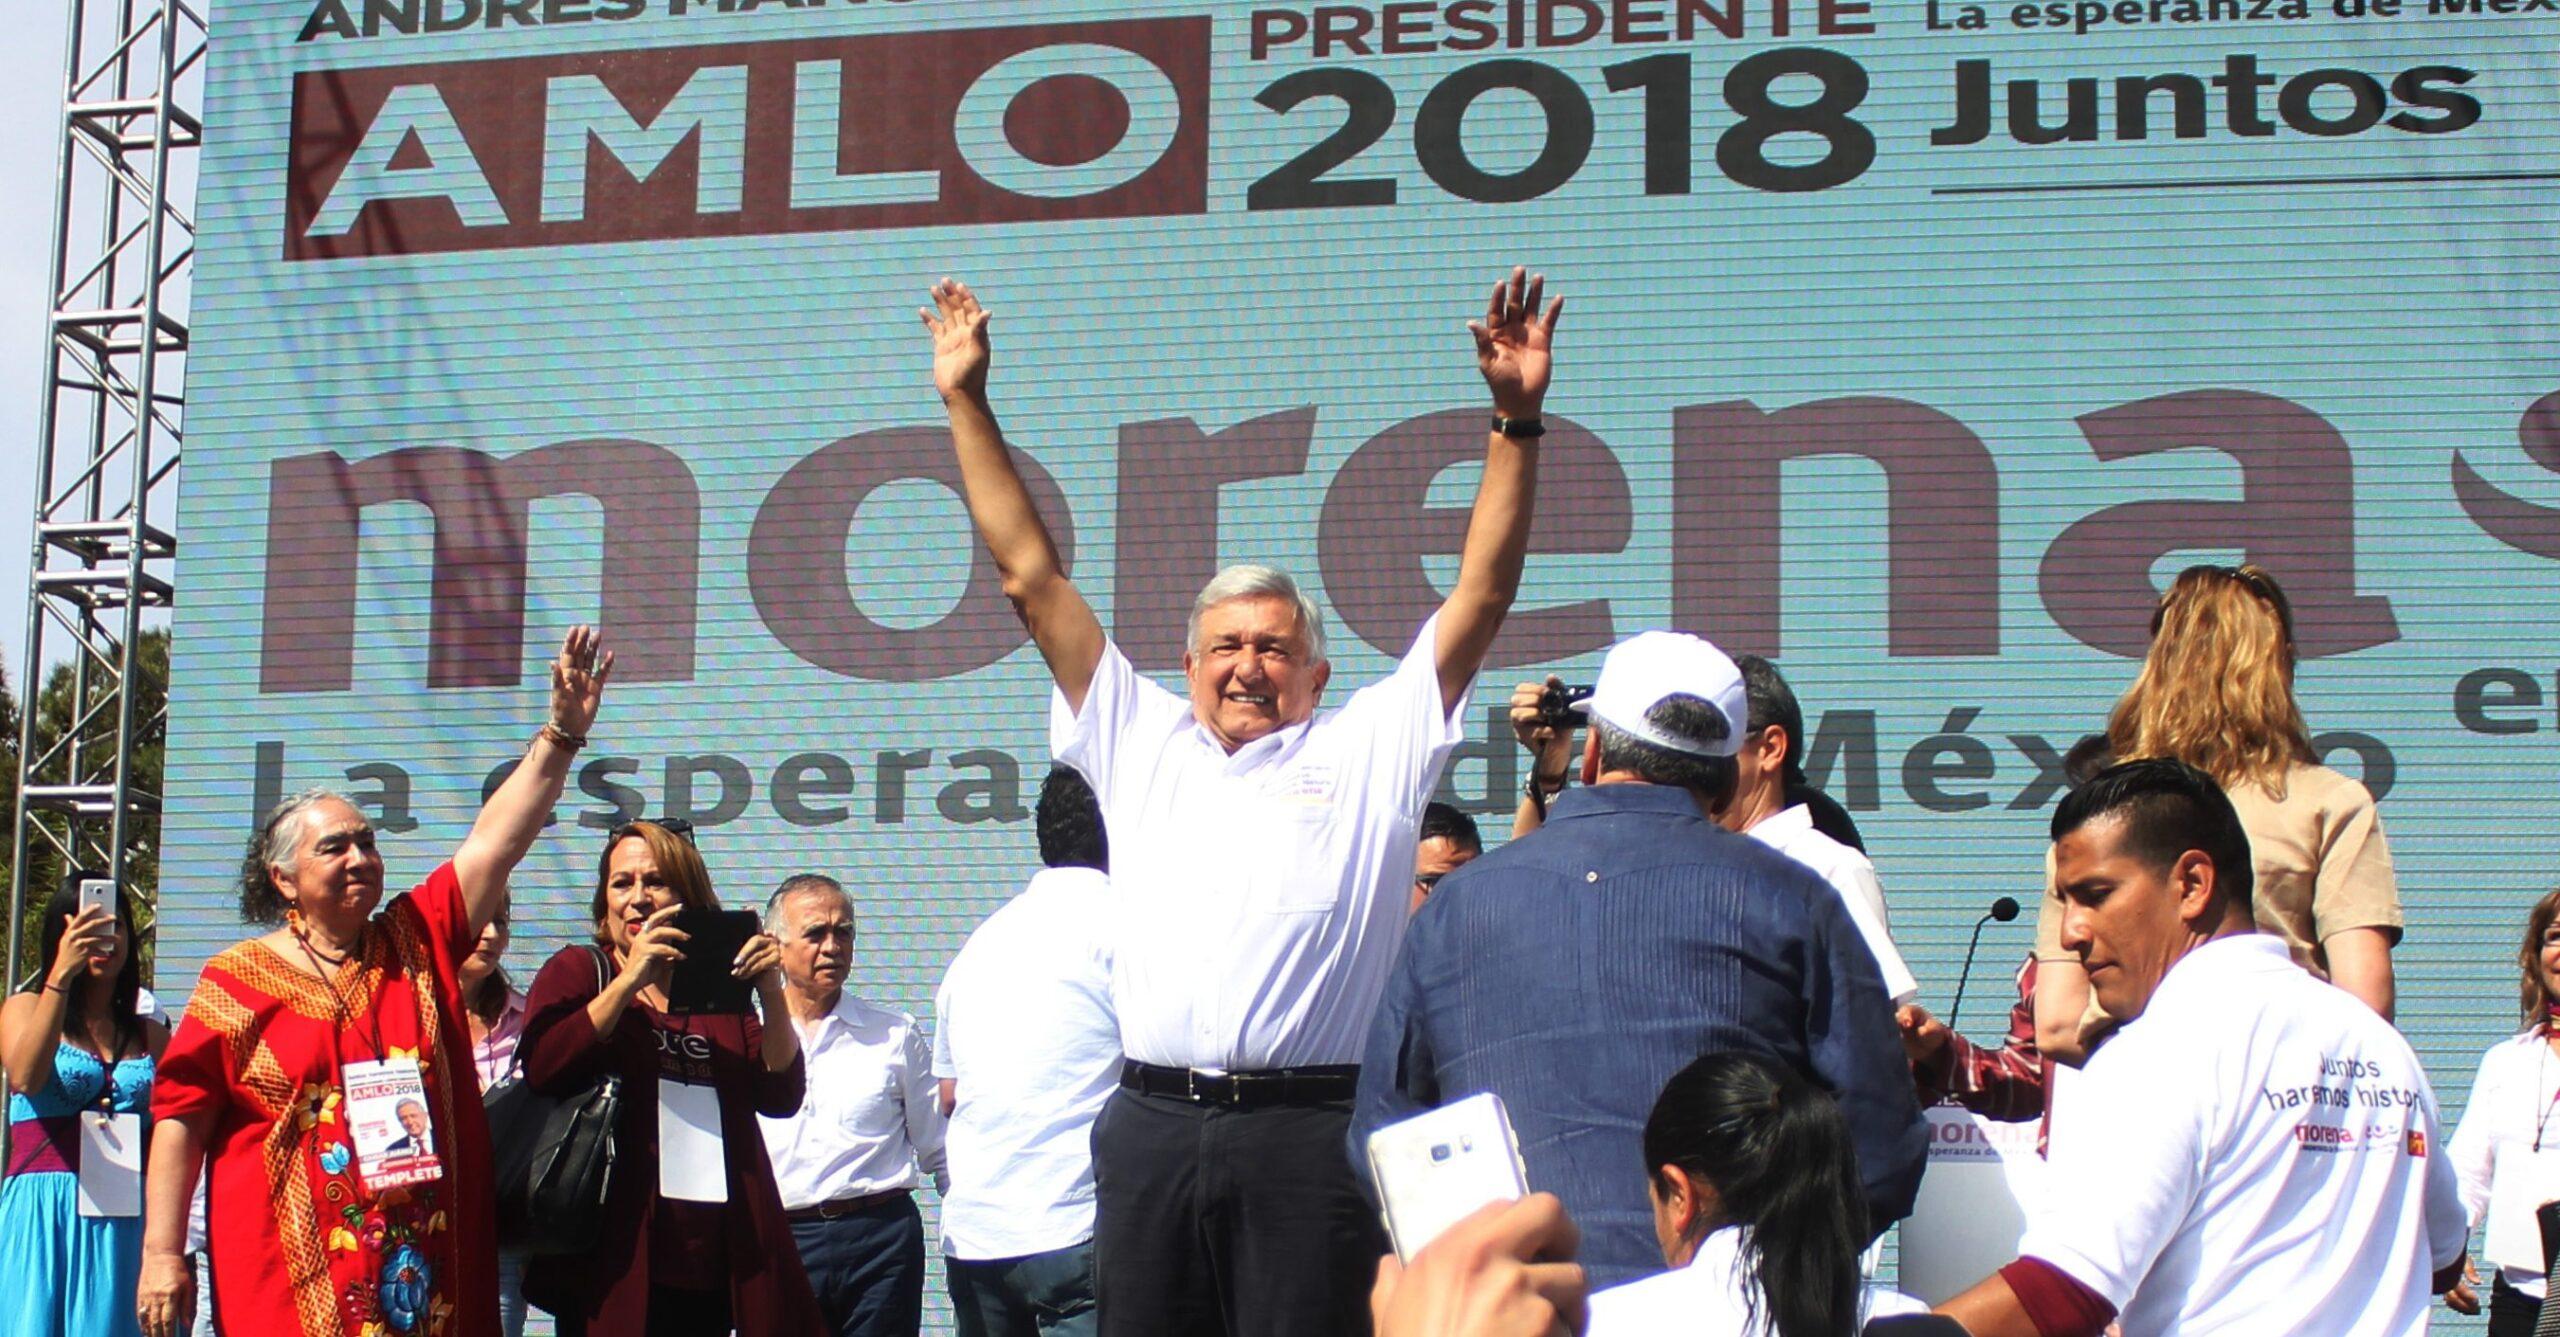 Los maestros rusos, los invitados sorpresa al arranque de campaña de López Obrador